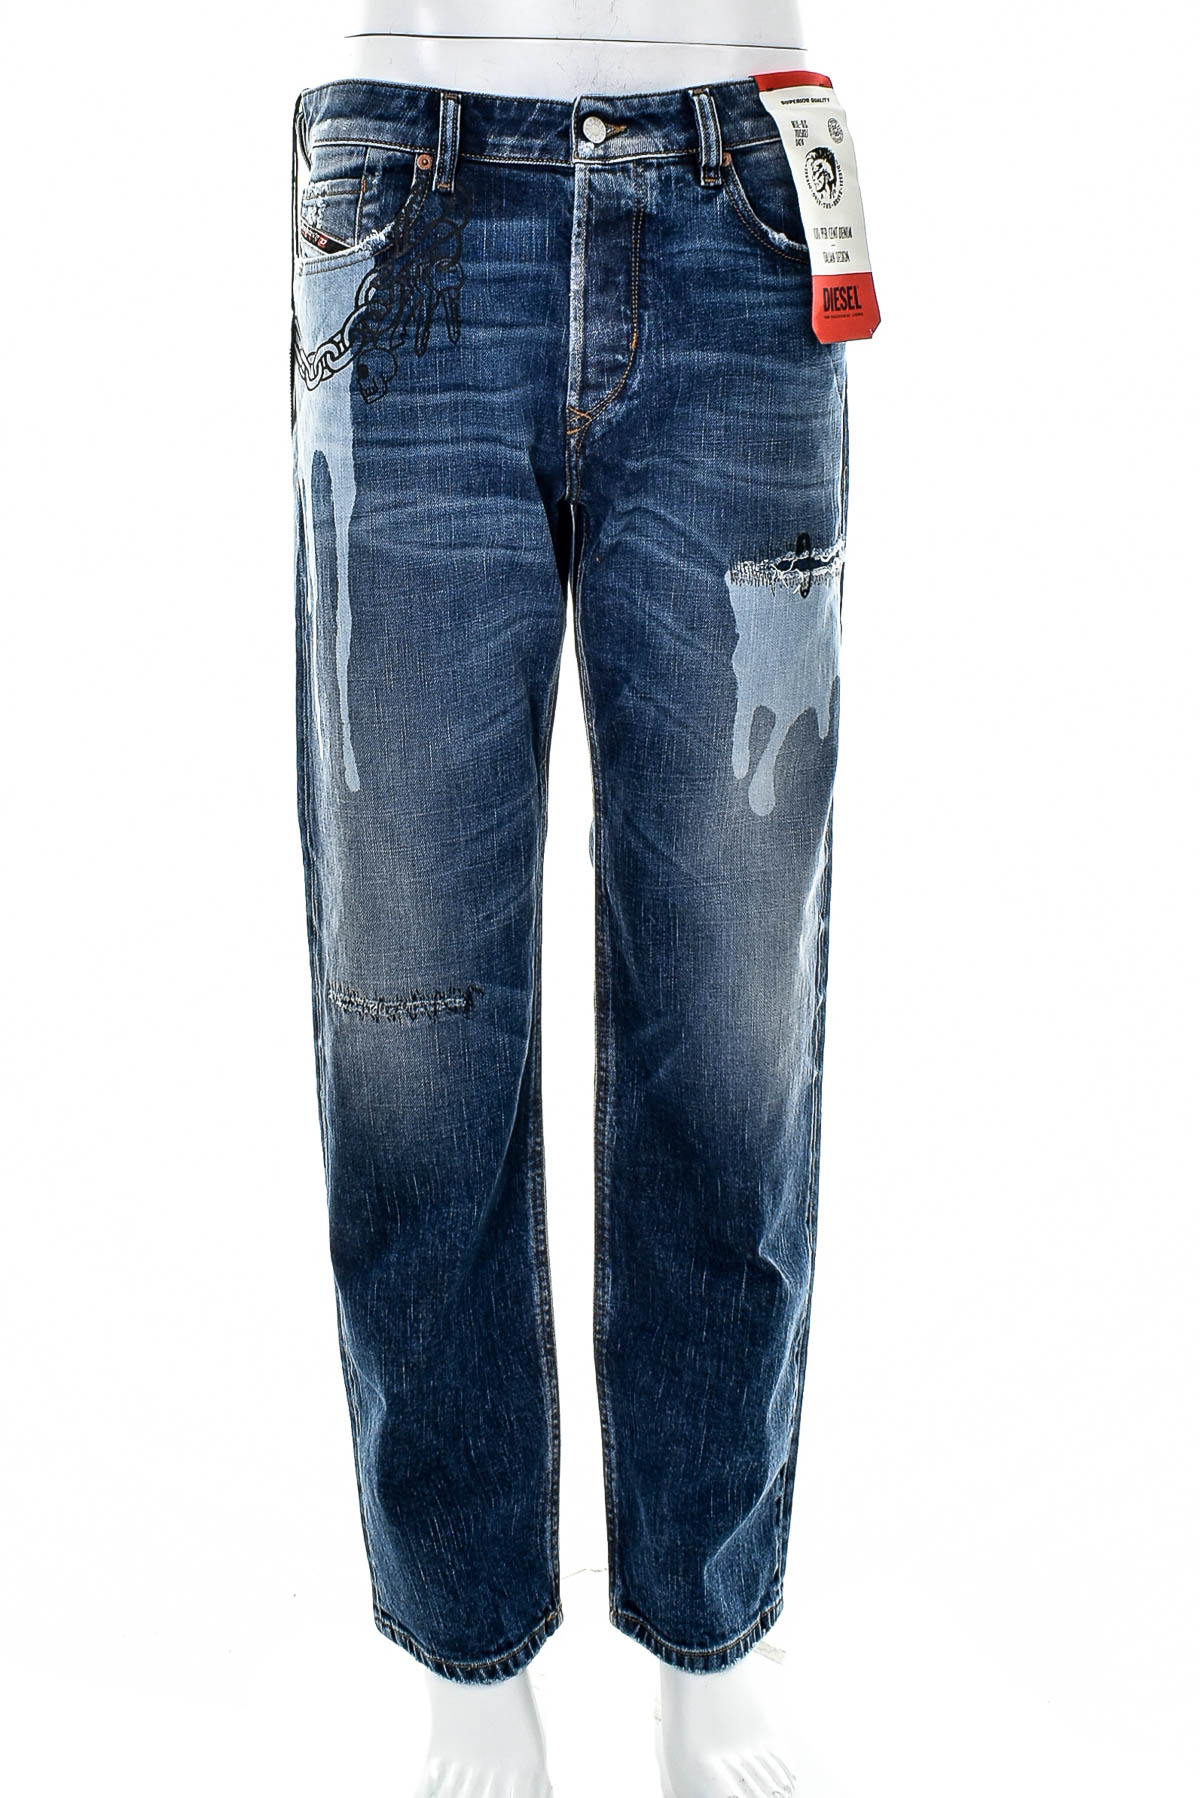 Men's jeans - DIESEL - 0